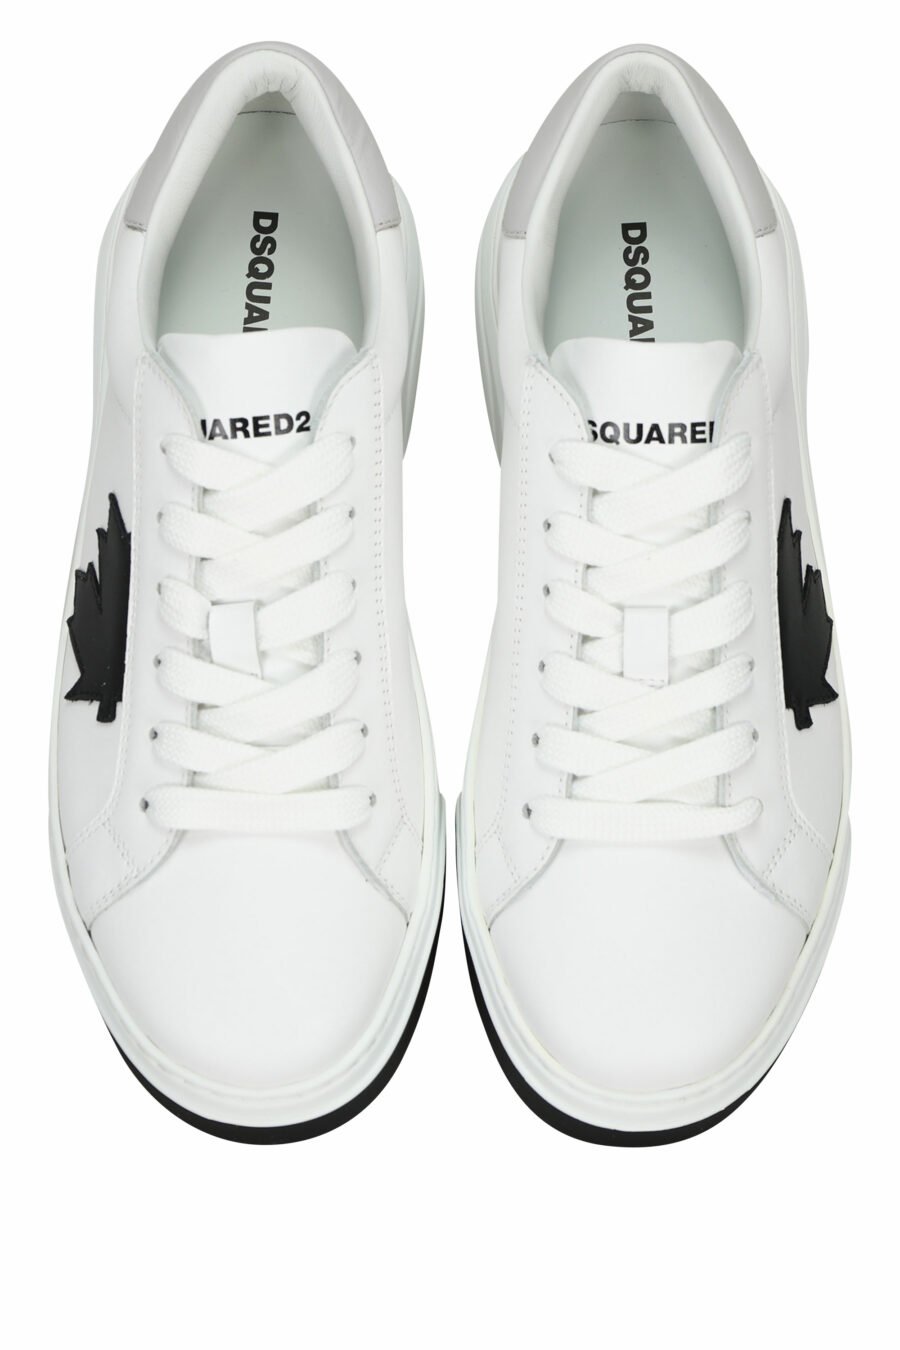 Zapatillas blancas con minilogo negro y suela bicolor - 805777319321 4